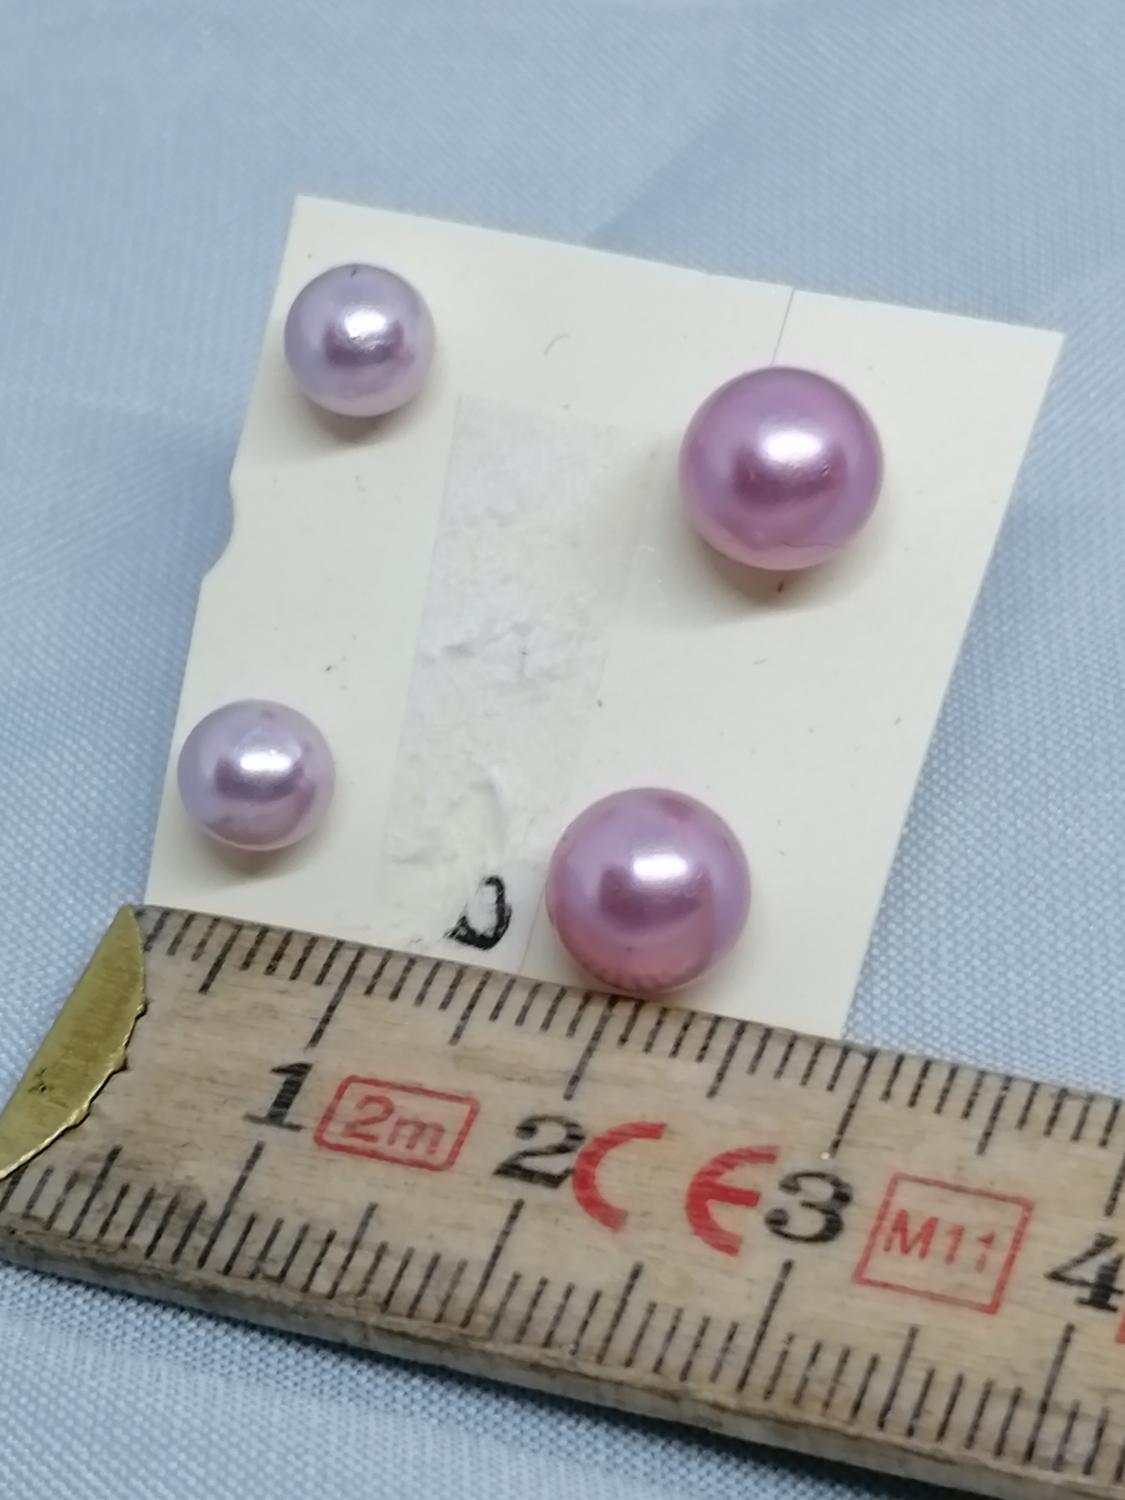 Bijouteri smycke örhänge för hål 2 par små rosa pärlor